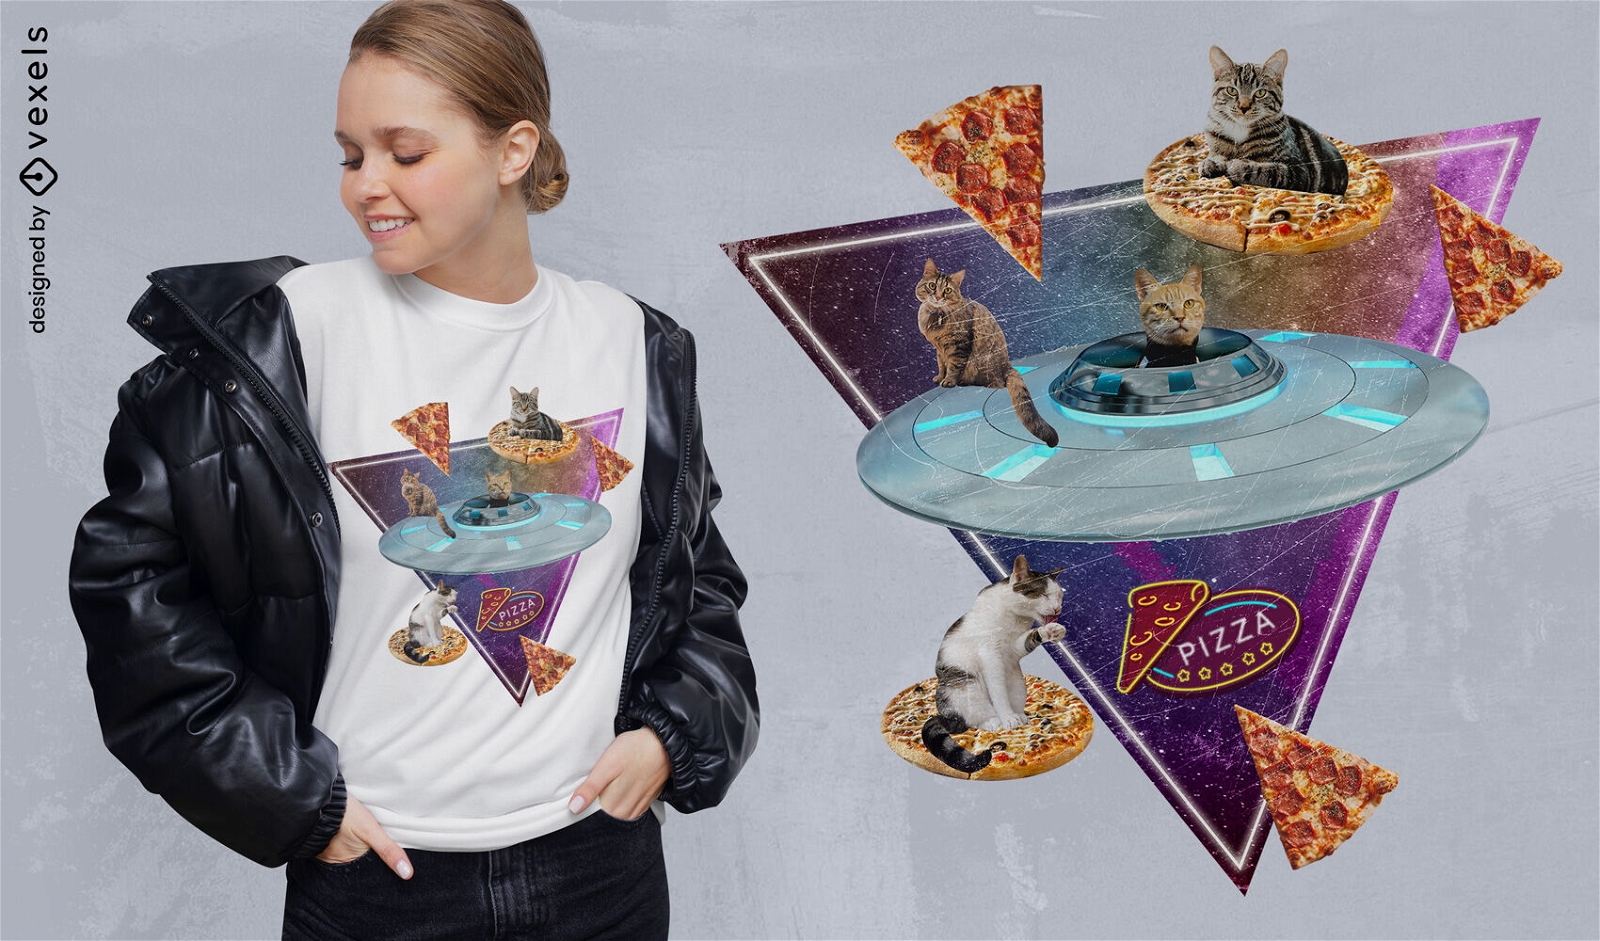 T-shirt da colagem fotográfica do carro da pizza do gato psd